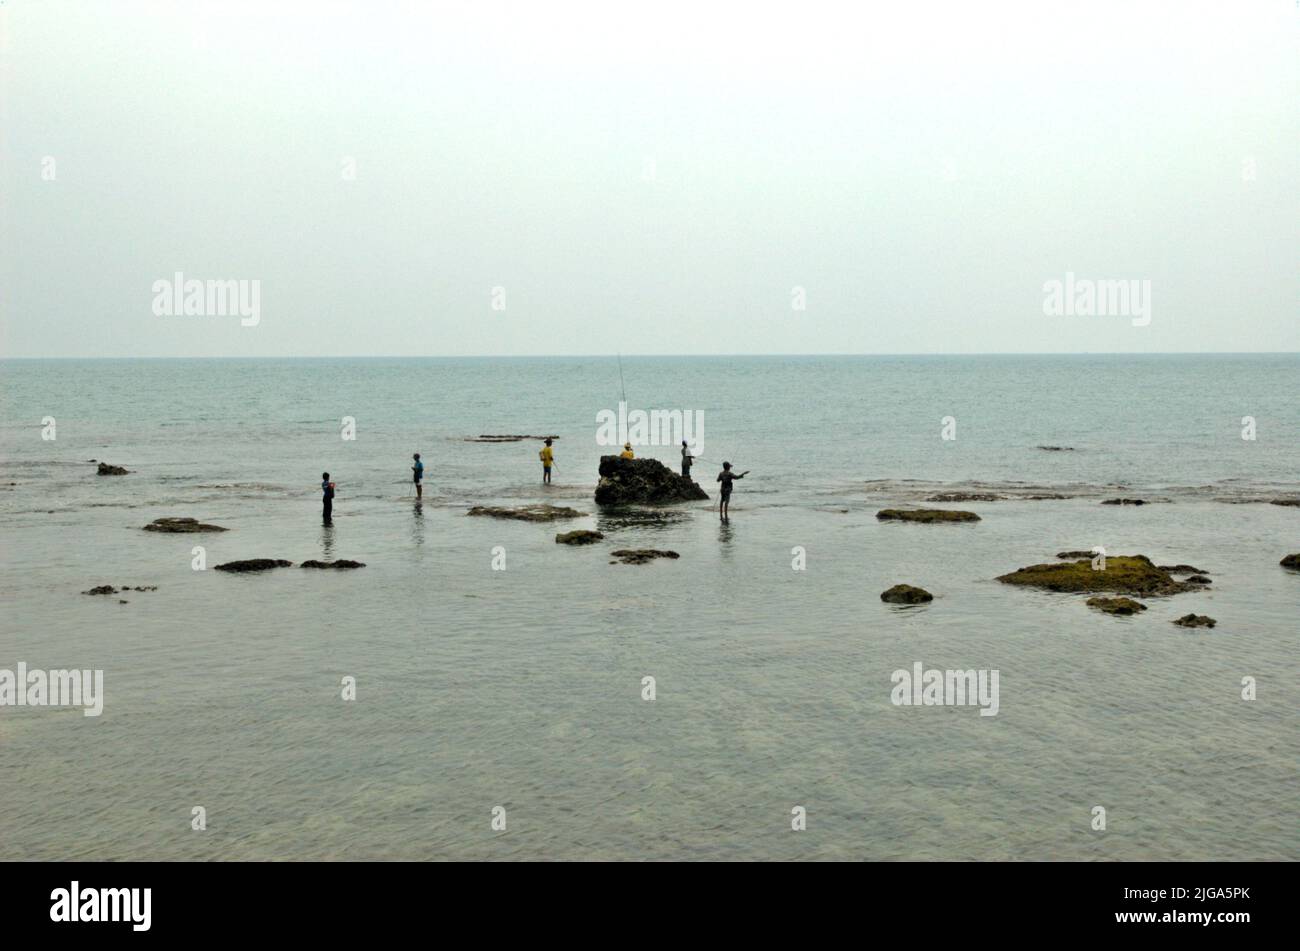 Les gens pêchent en étant debout sur des eaux peu profondes sur une plage plate et rocheuse face au détroit de Sunda à Cikoneng, Anyer, Serang, Banten, Indonésie. Banque D'Images